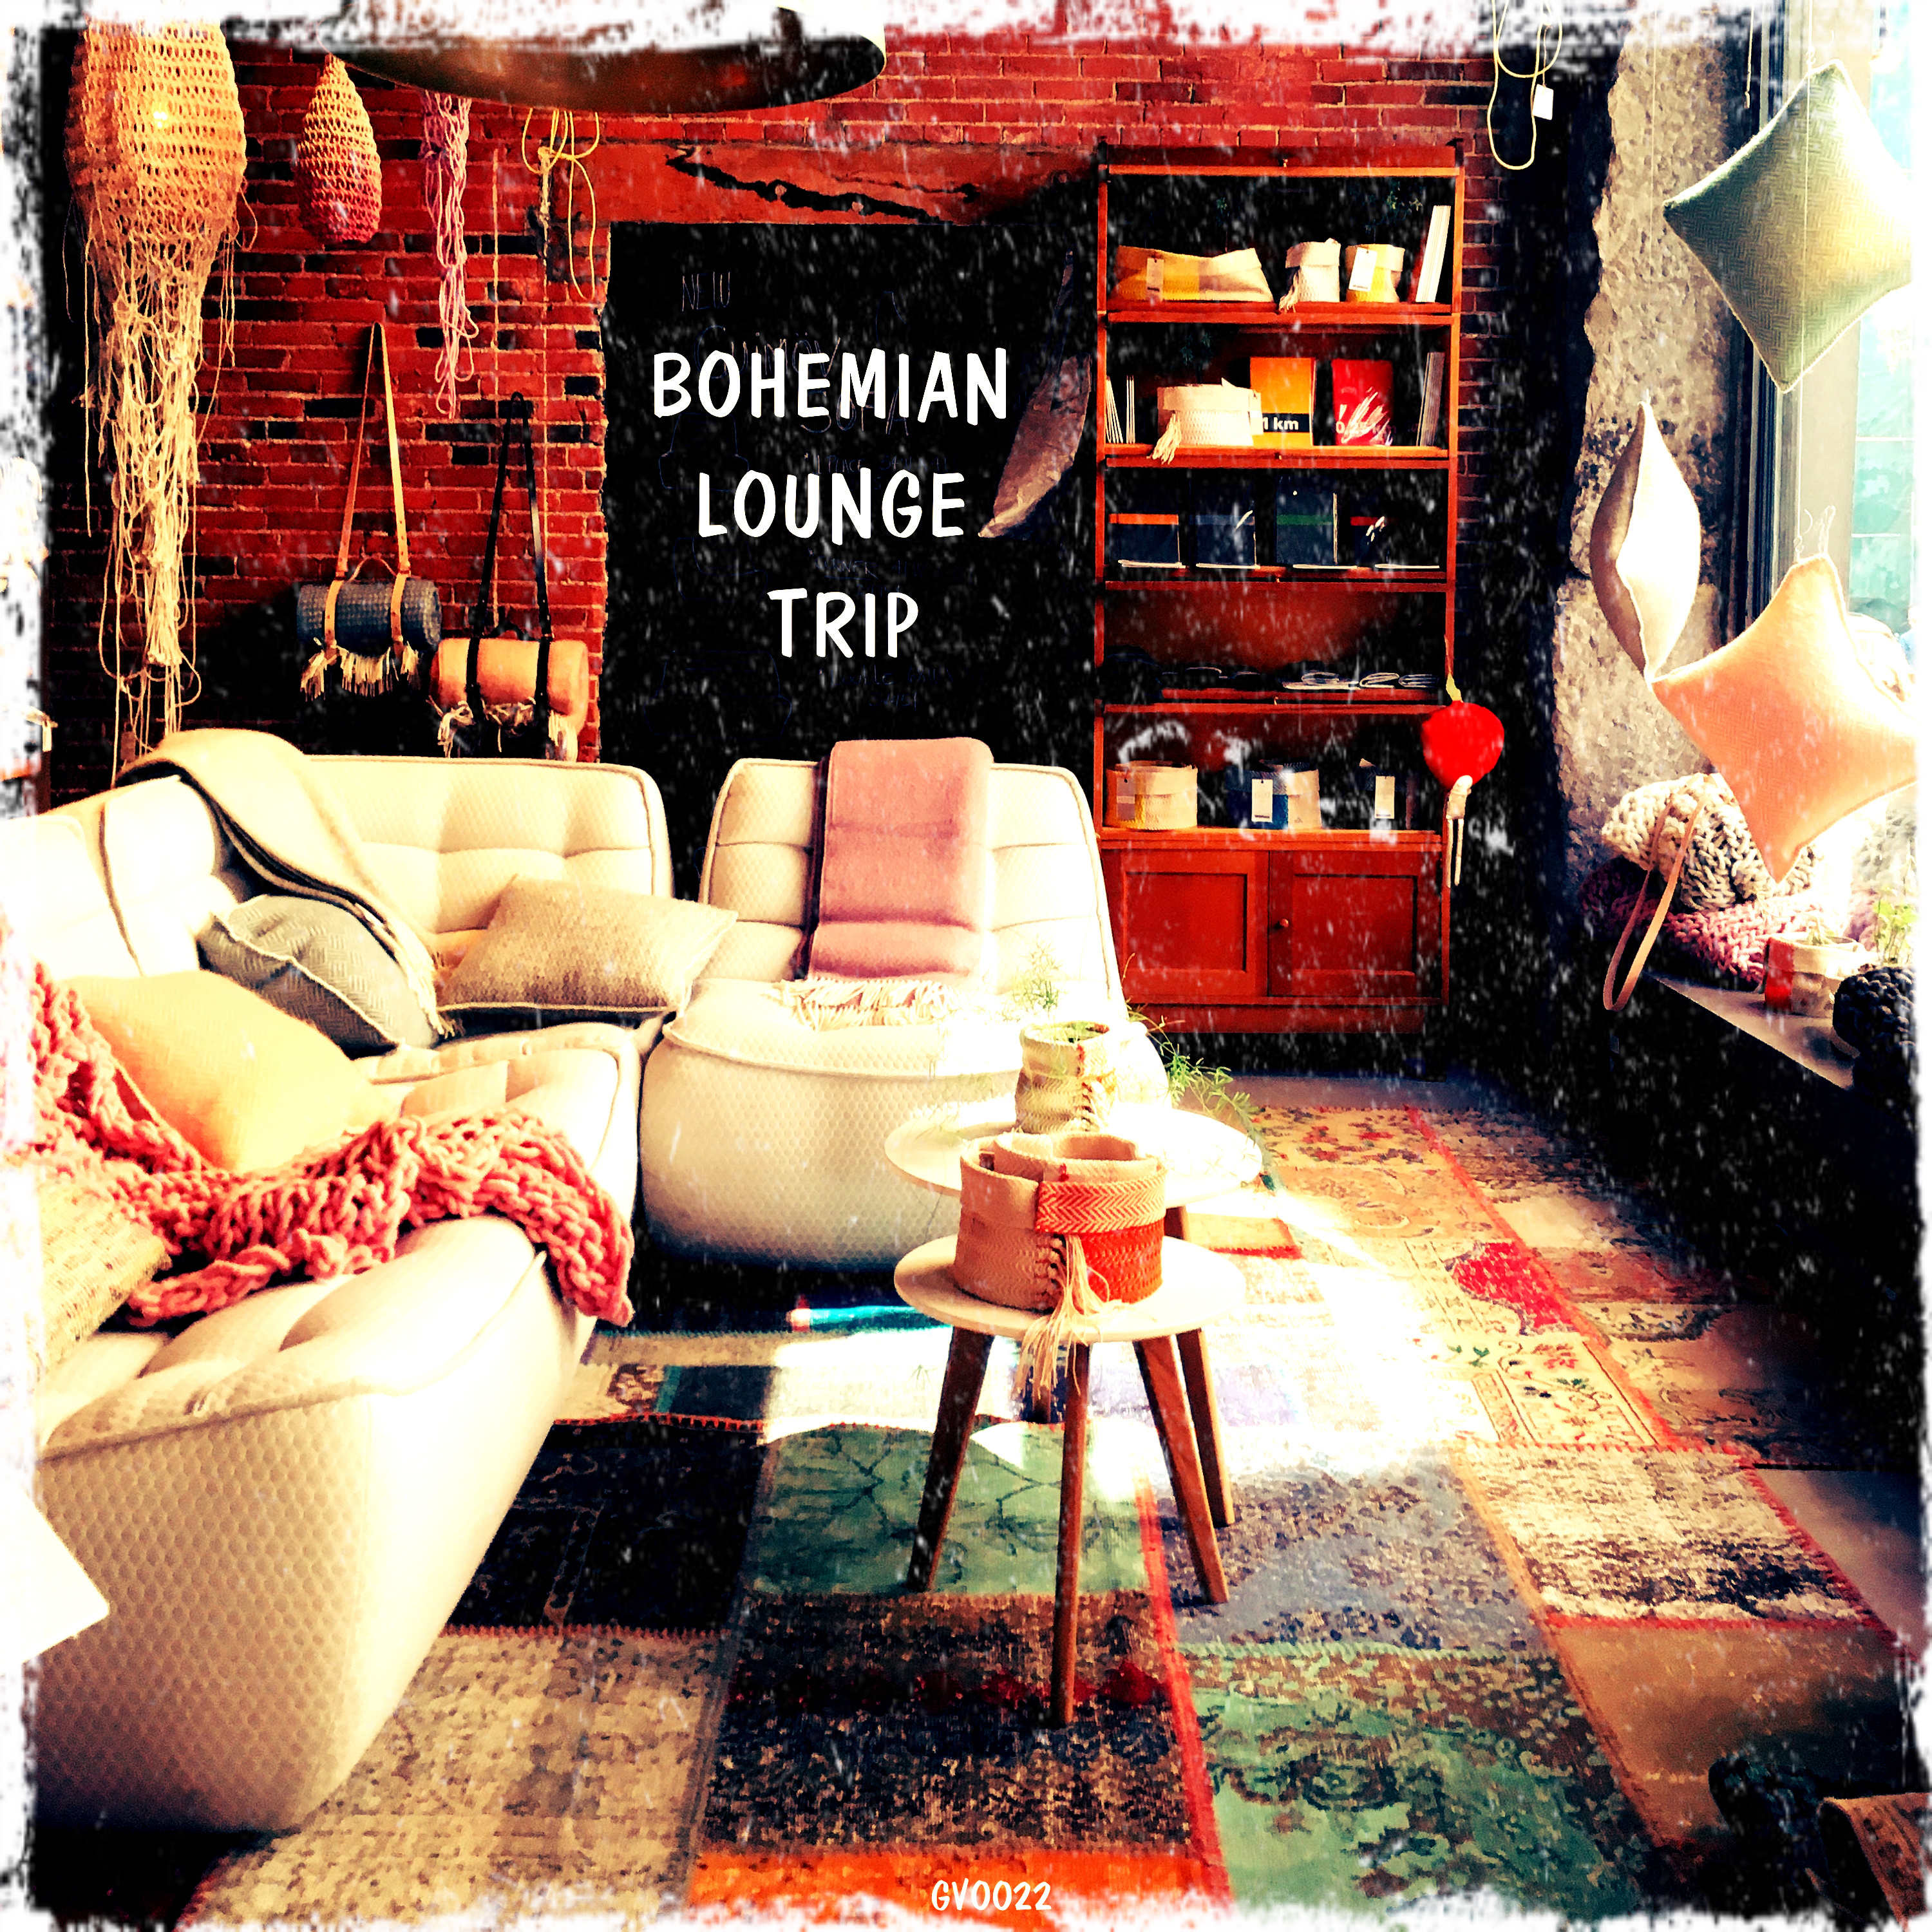 Bohemian Lounge Trip